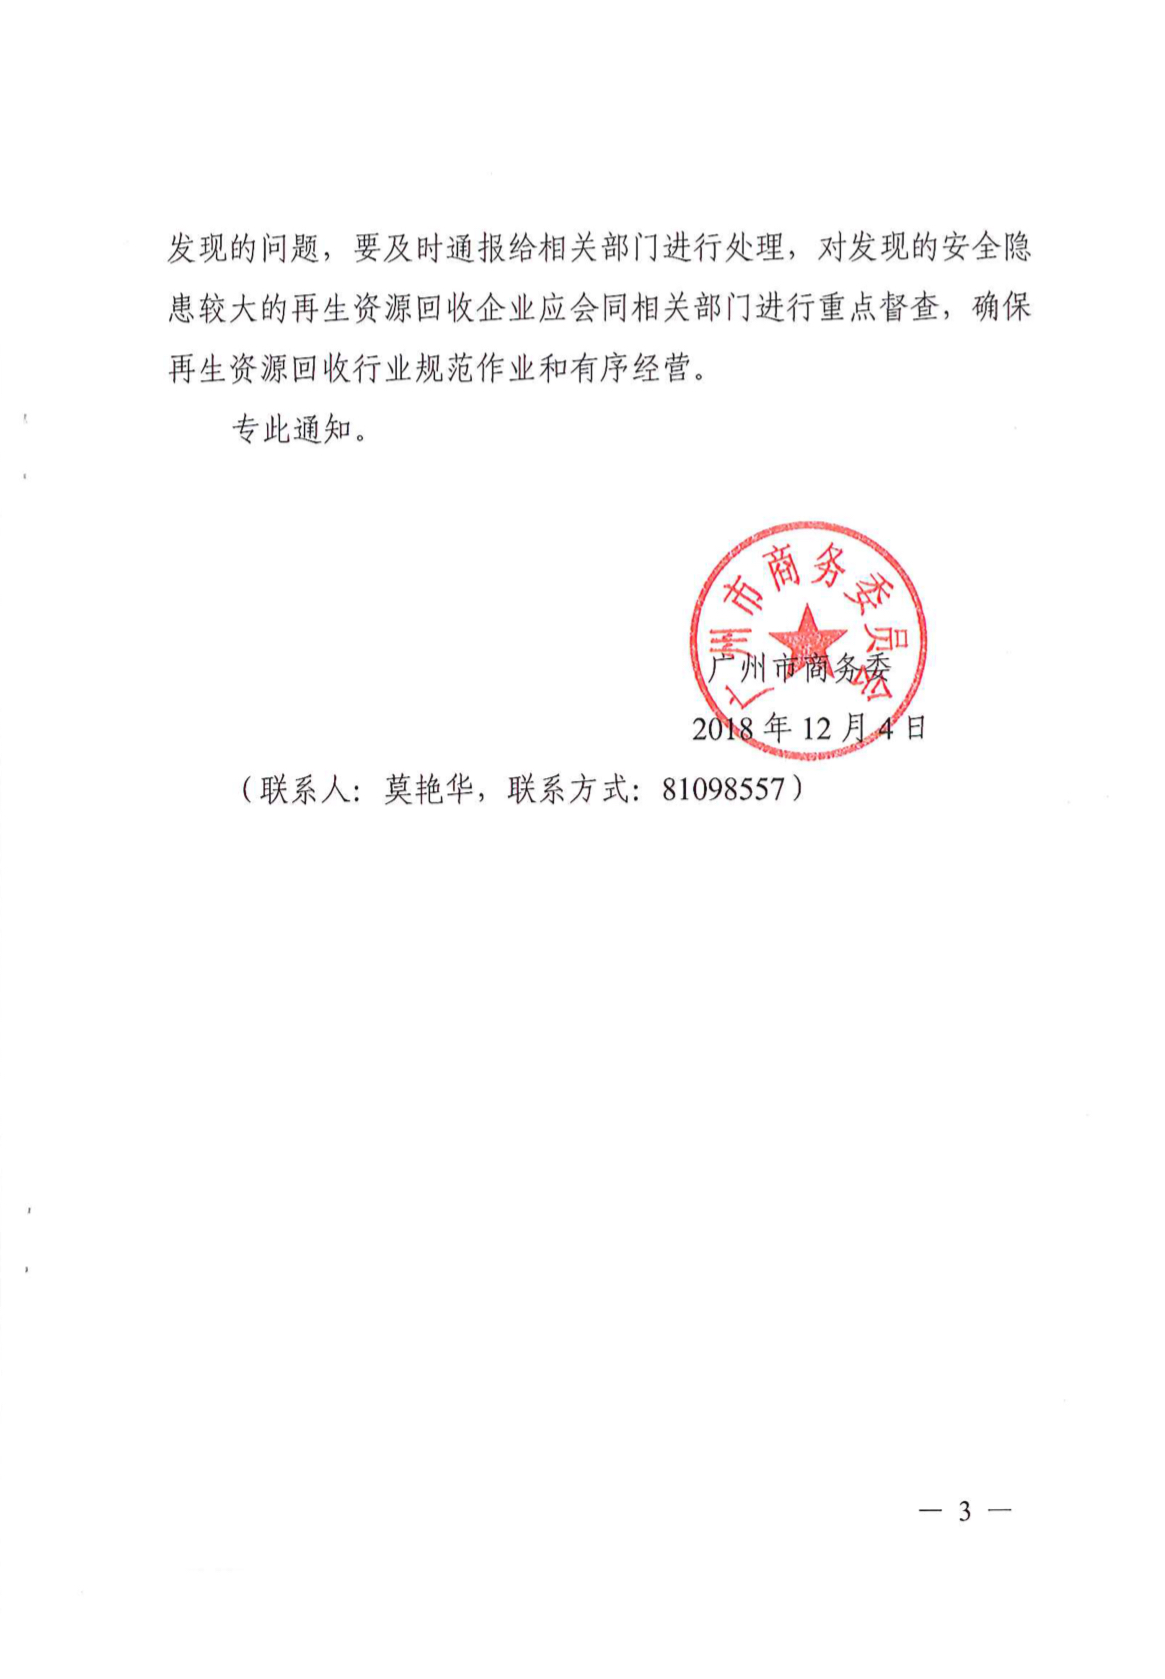 广州市商务委关于加强再生资源管理工作的通知-IMG_3873-20181210-135539